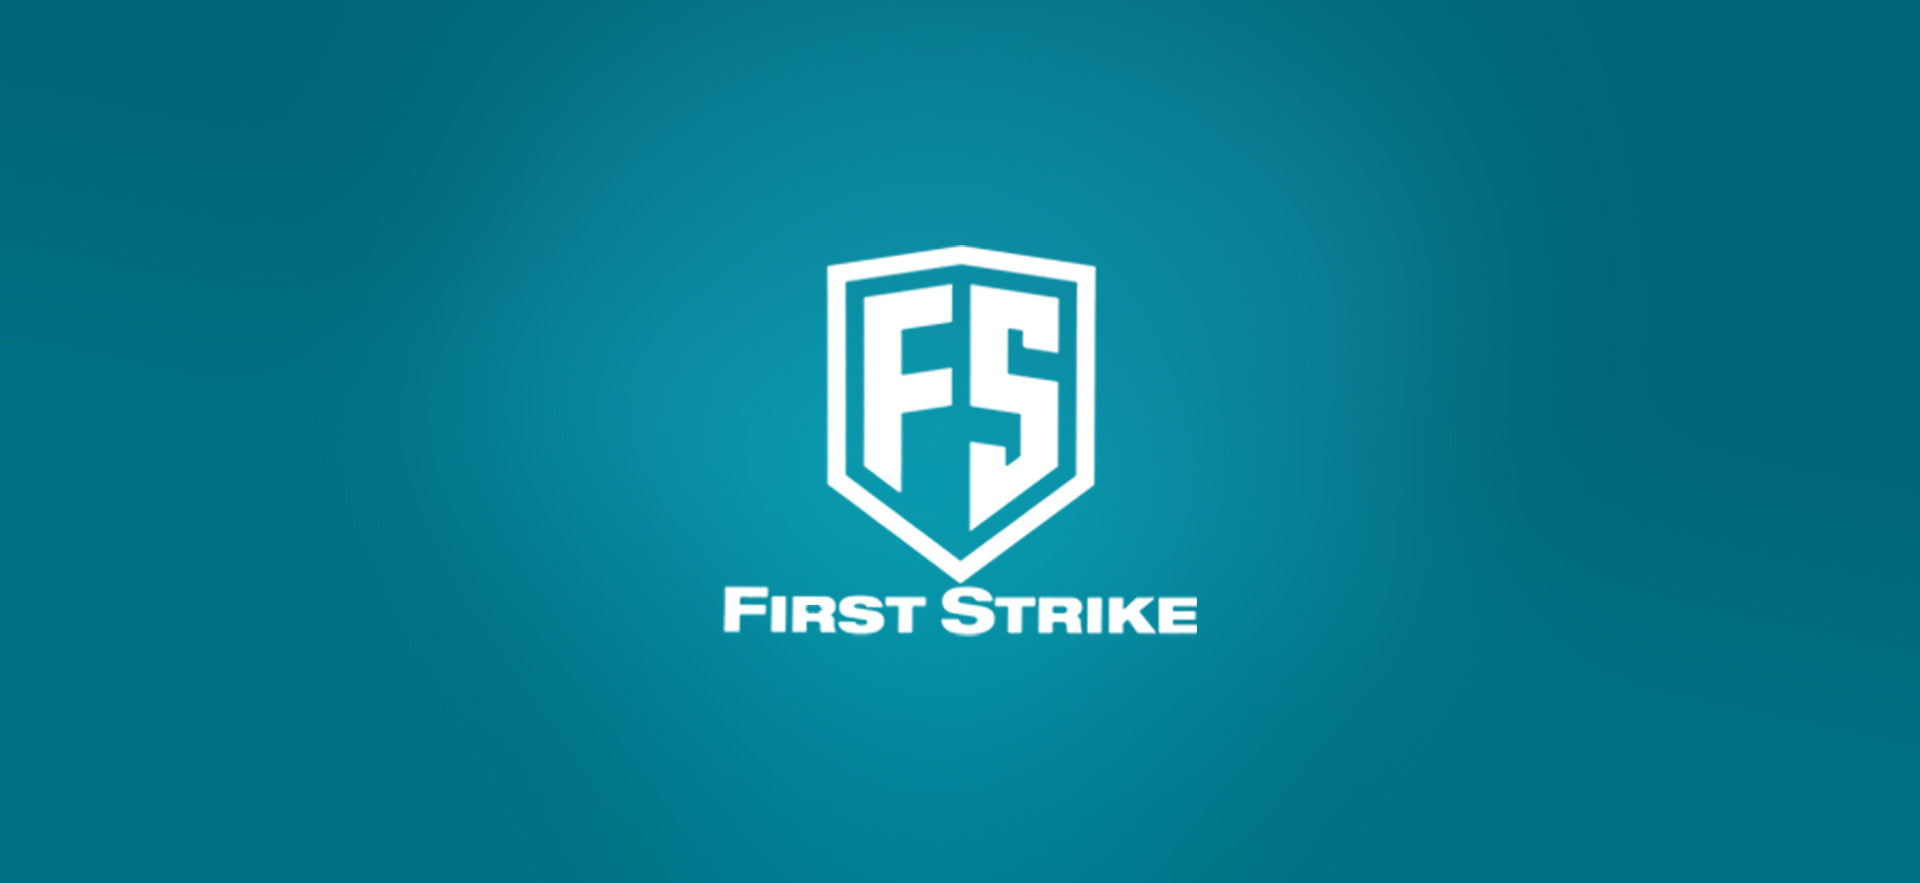 First Strike - Weekend-Warrior.Shop